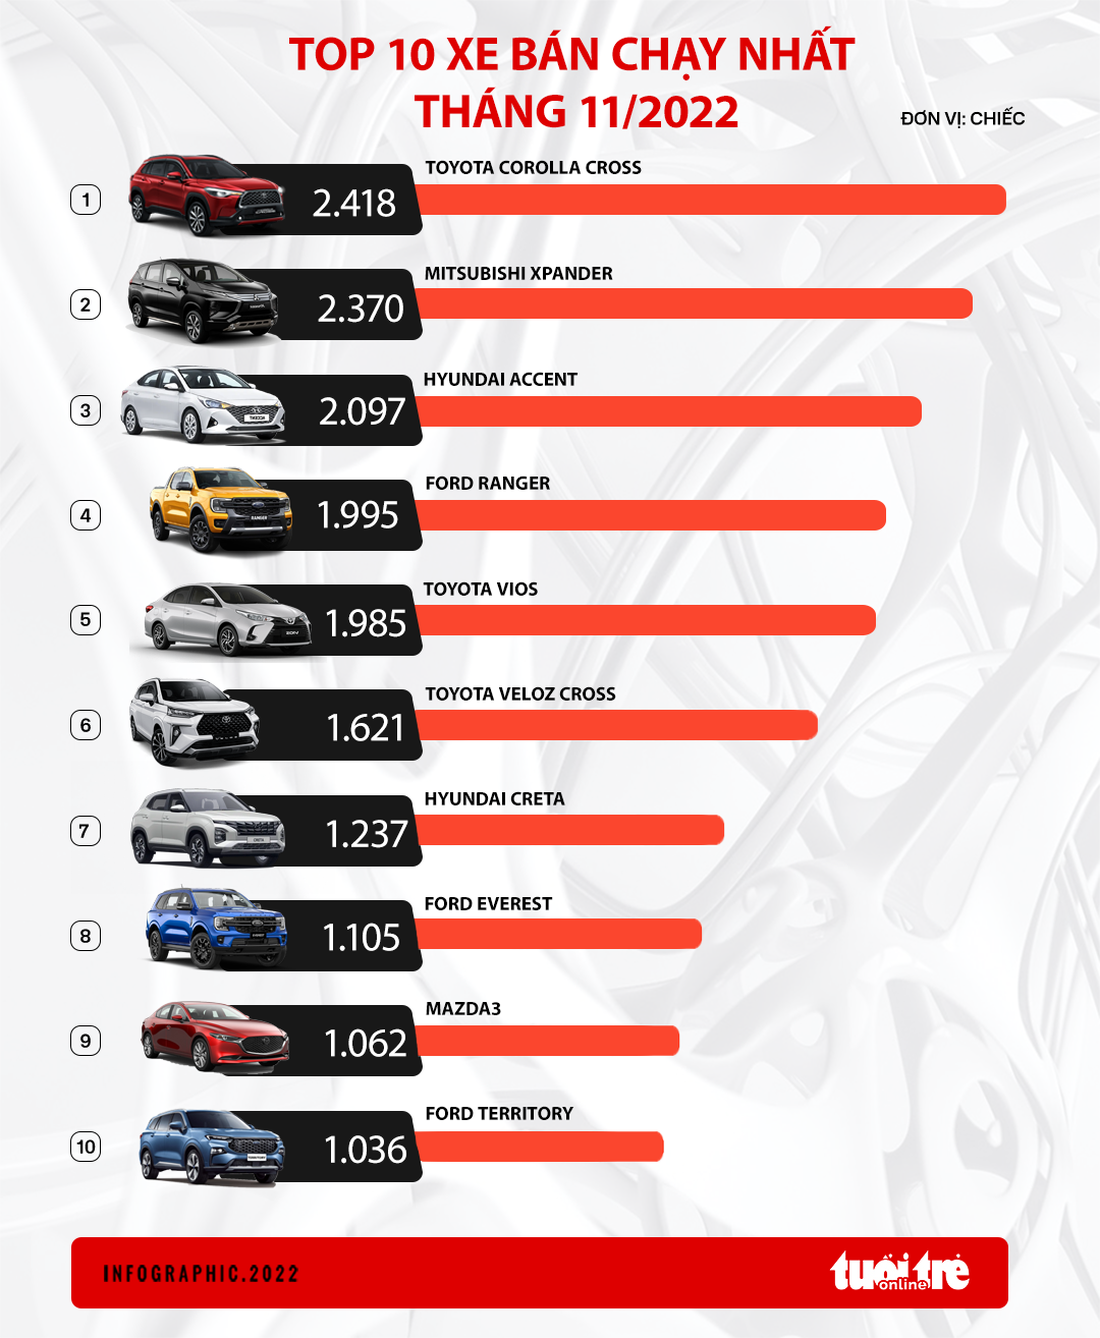 10 mẫu ô tô bán chạy nhất tháng 11: Ford Territory lần đầu vào top, Kia không có xe nào - Ảnh 1.